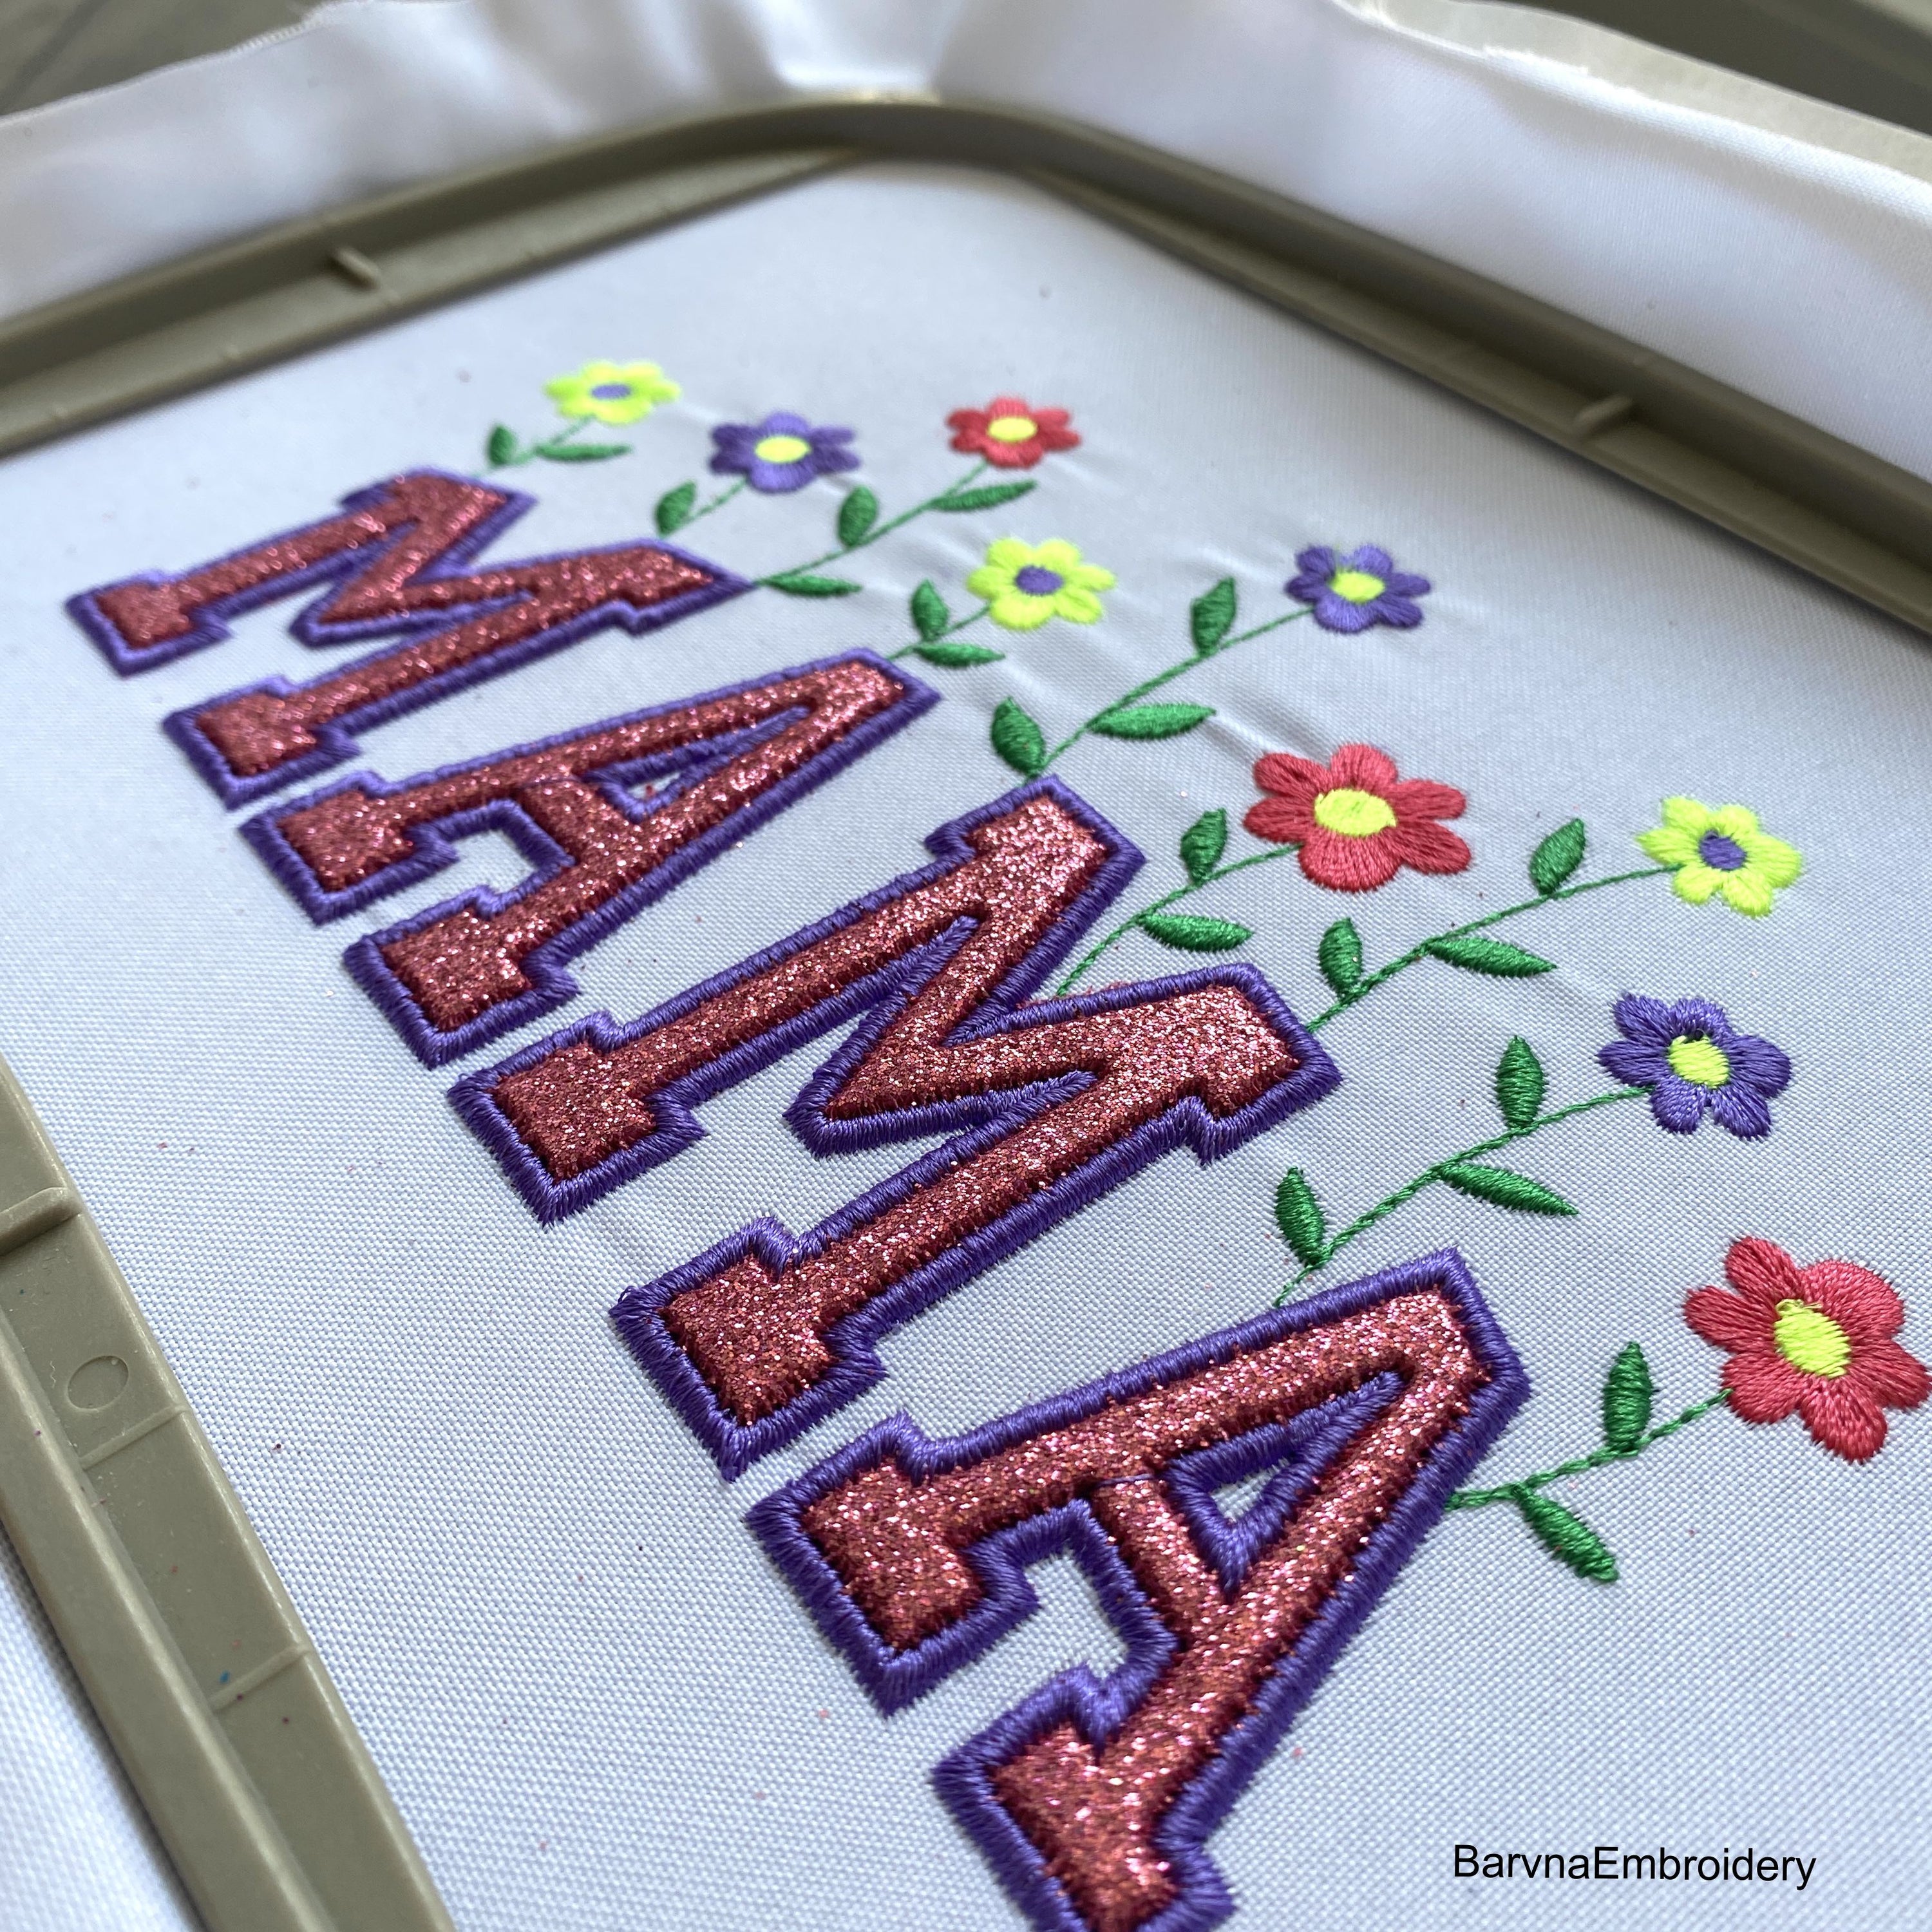 Mama Applique Machine embroidery designs.